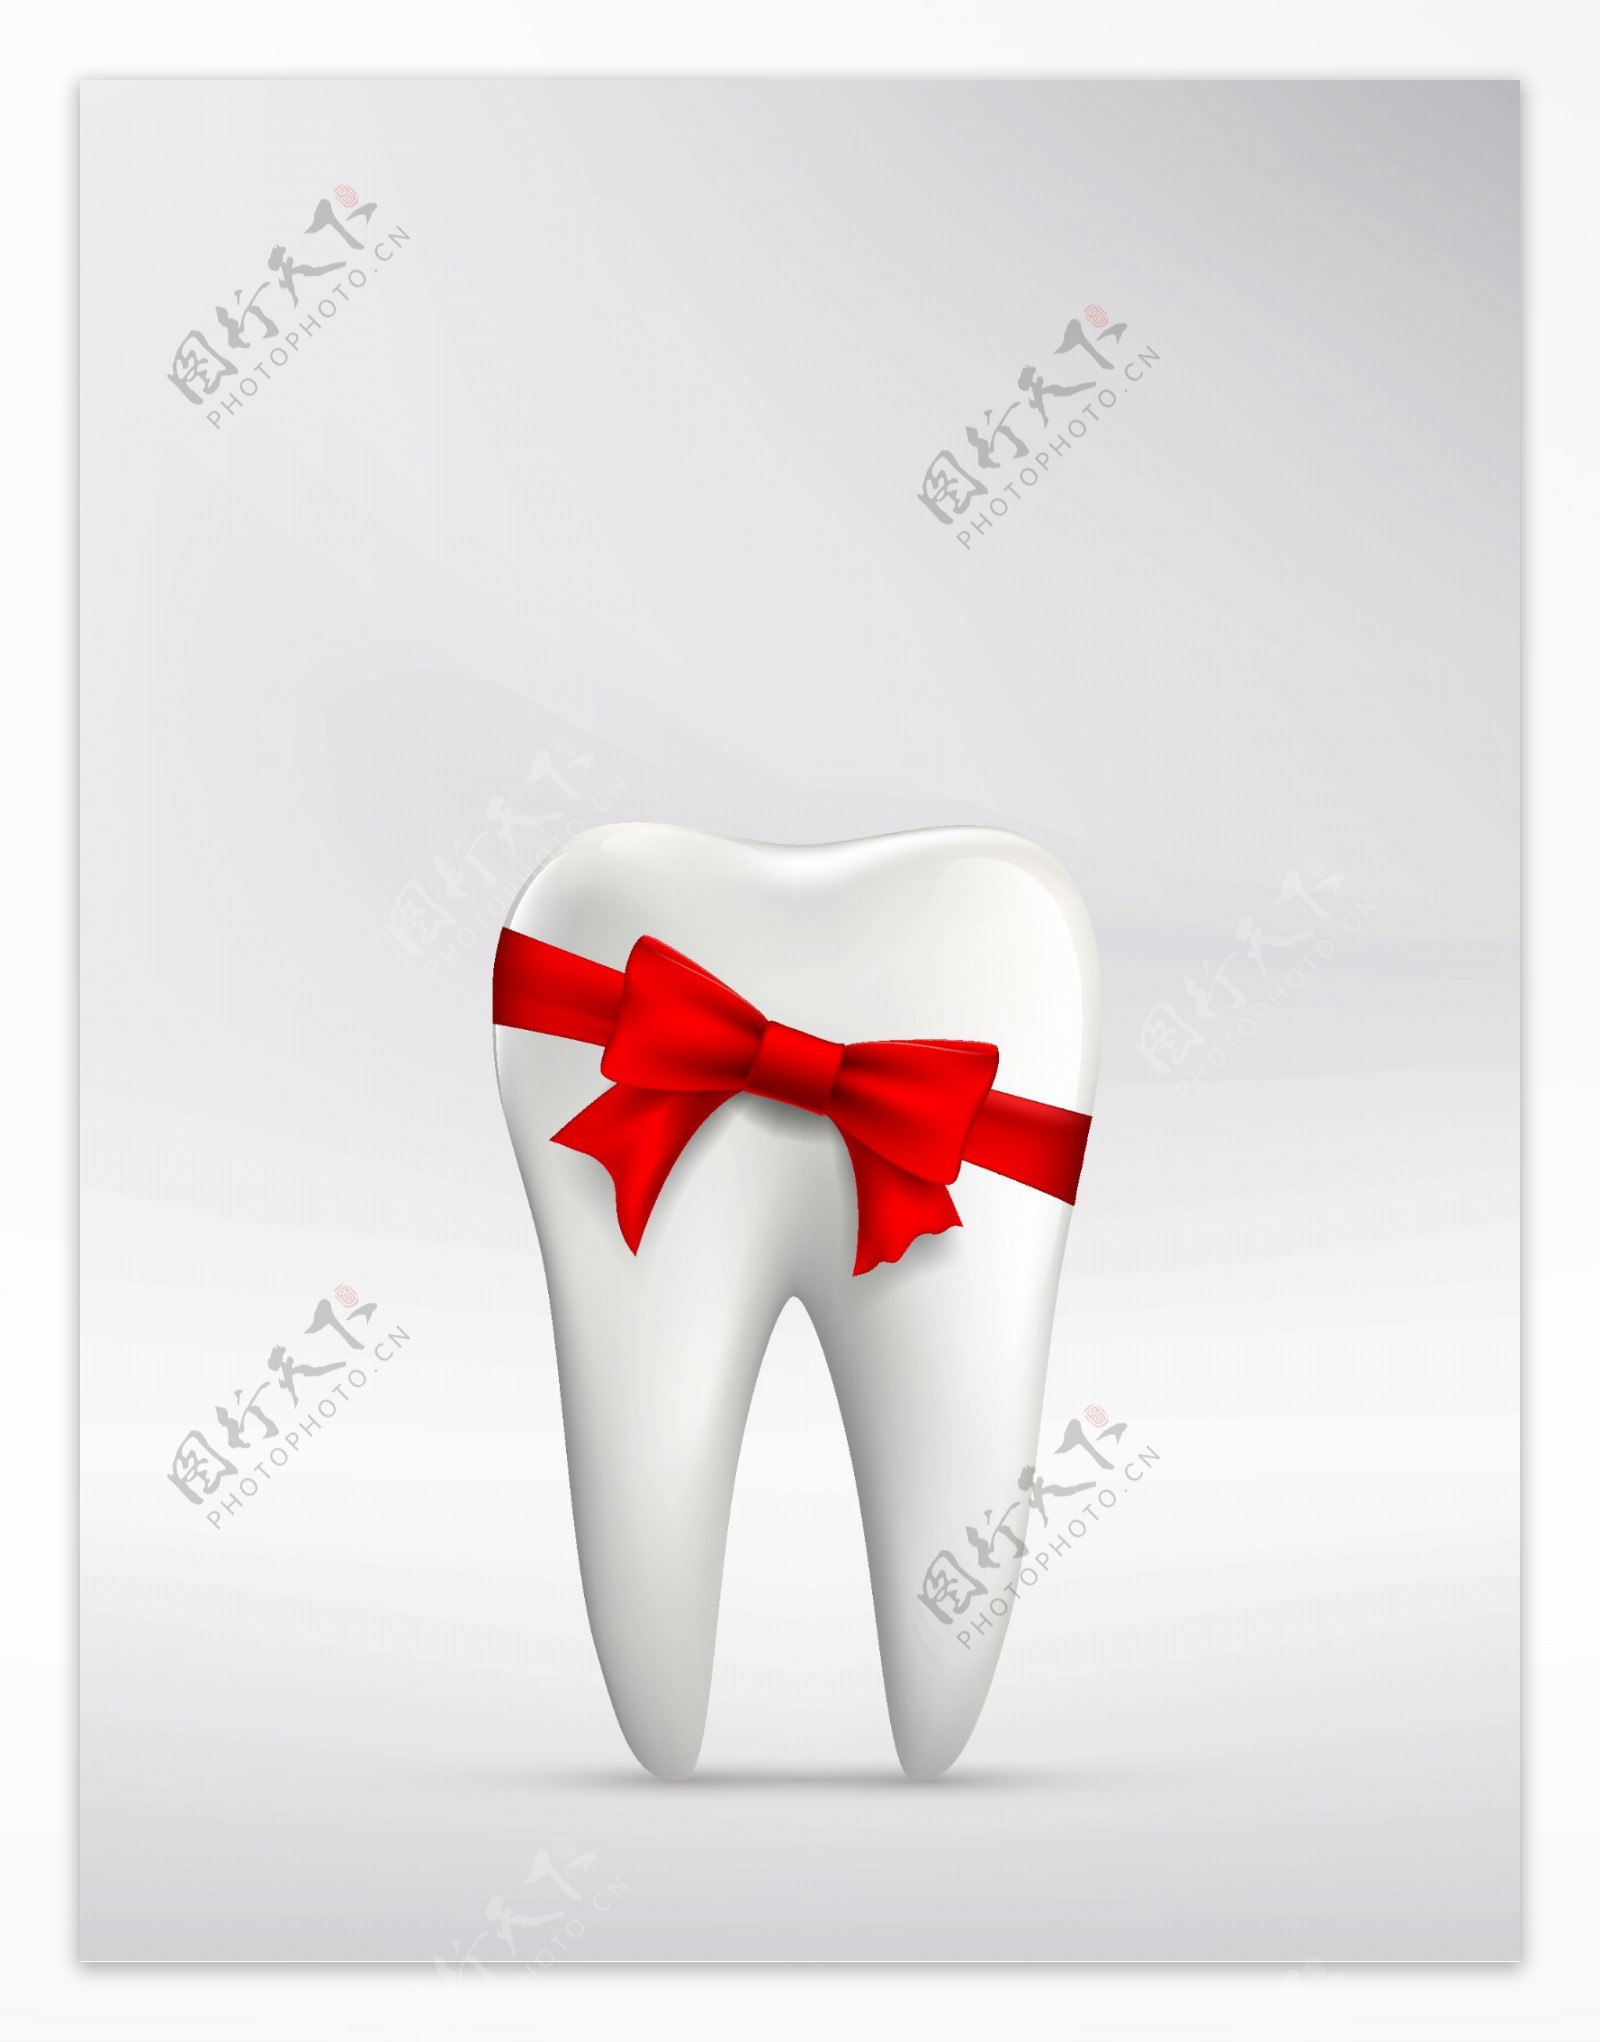 矢量牙齿医疗健康背景素材